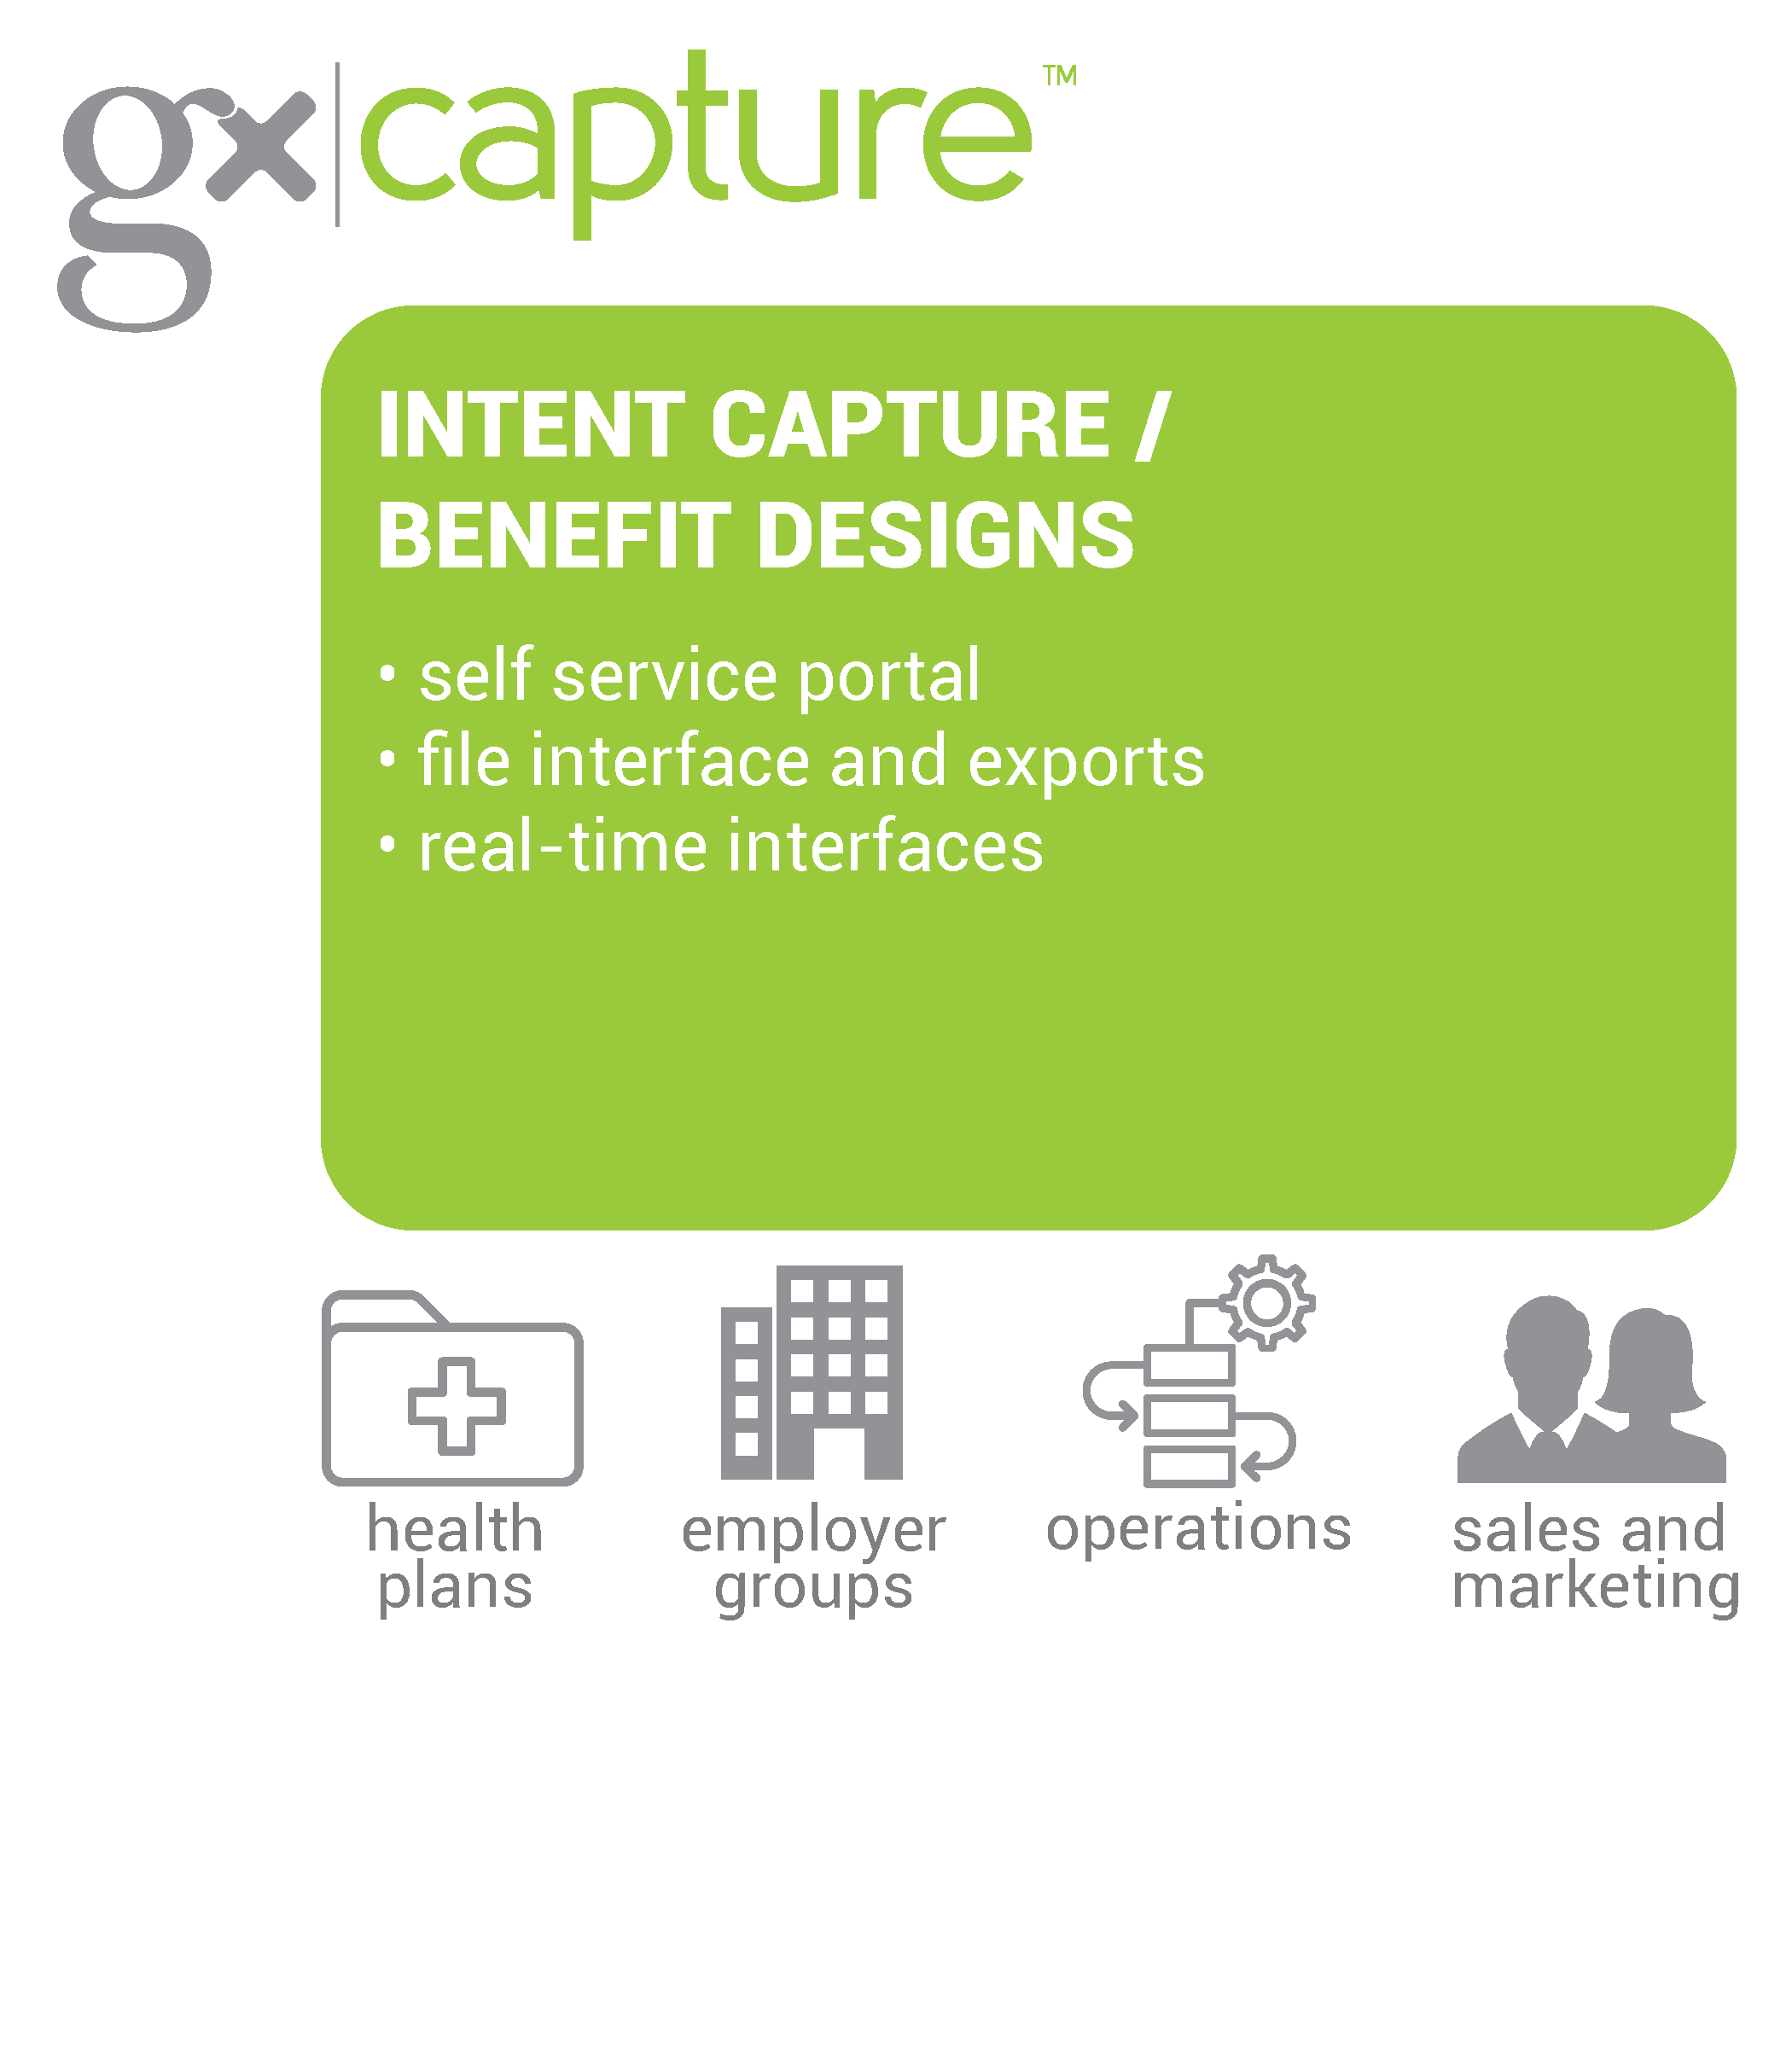 GxCapture Diagram